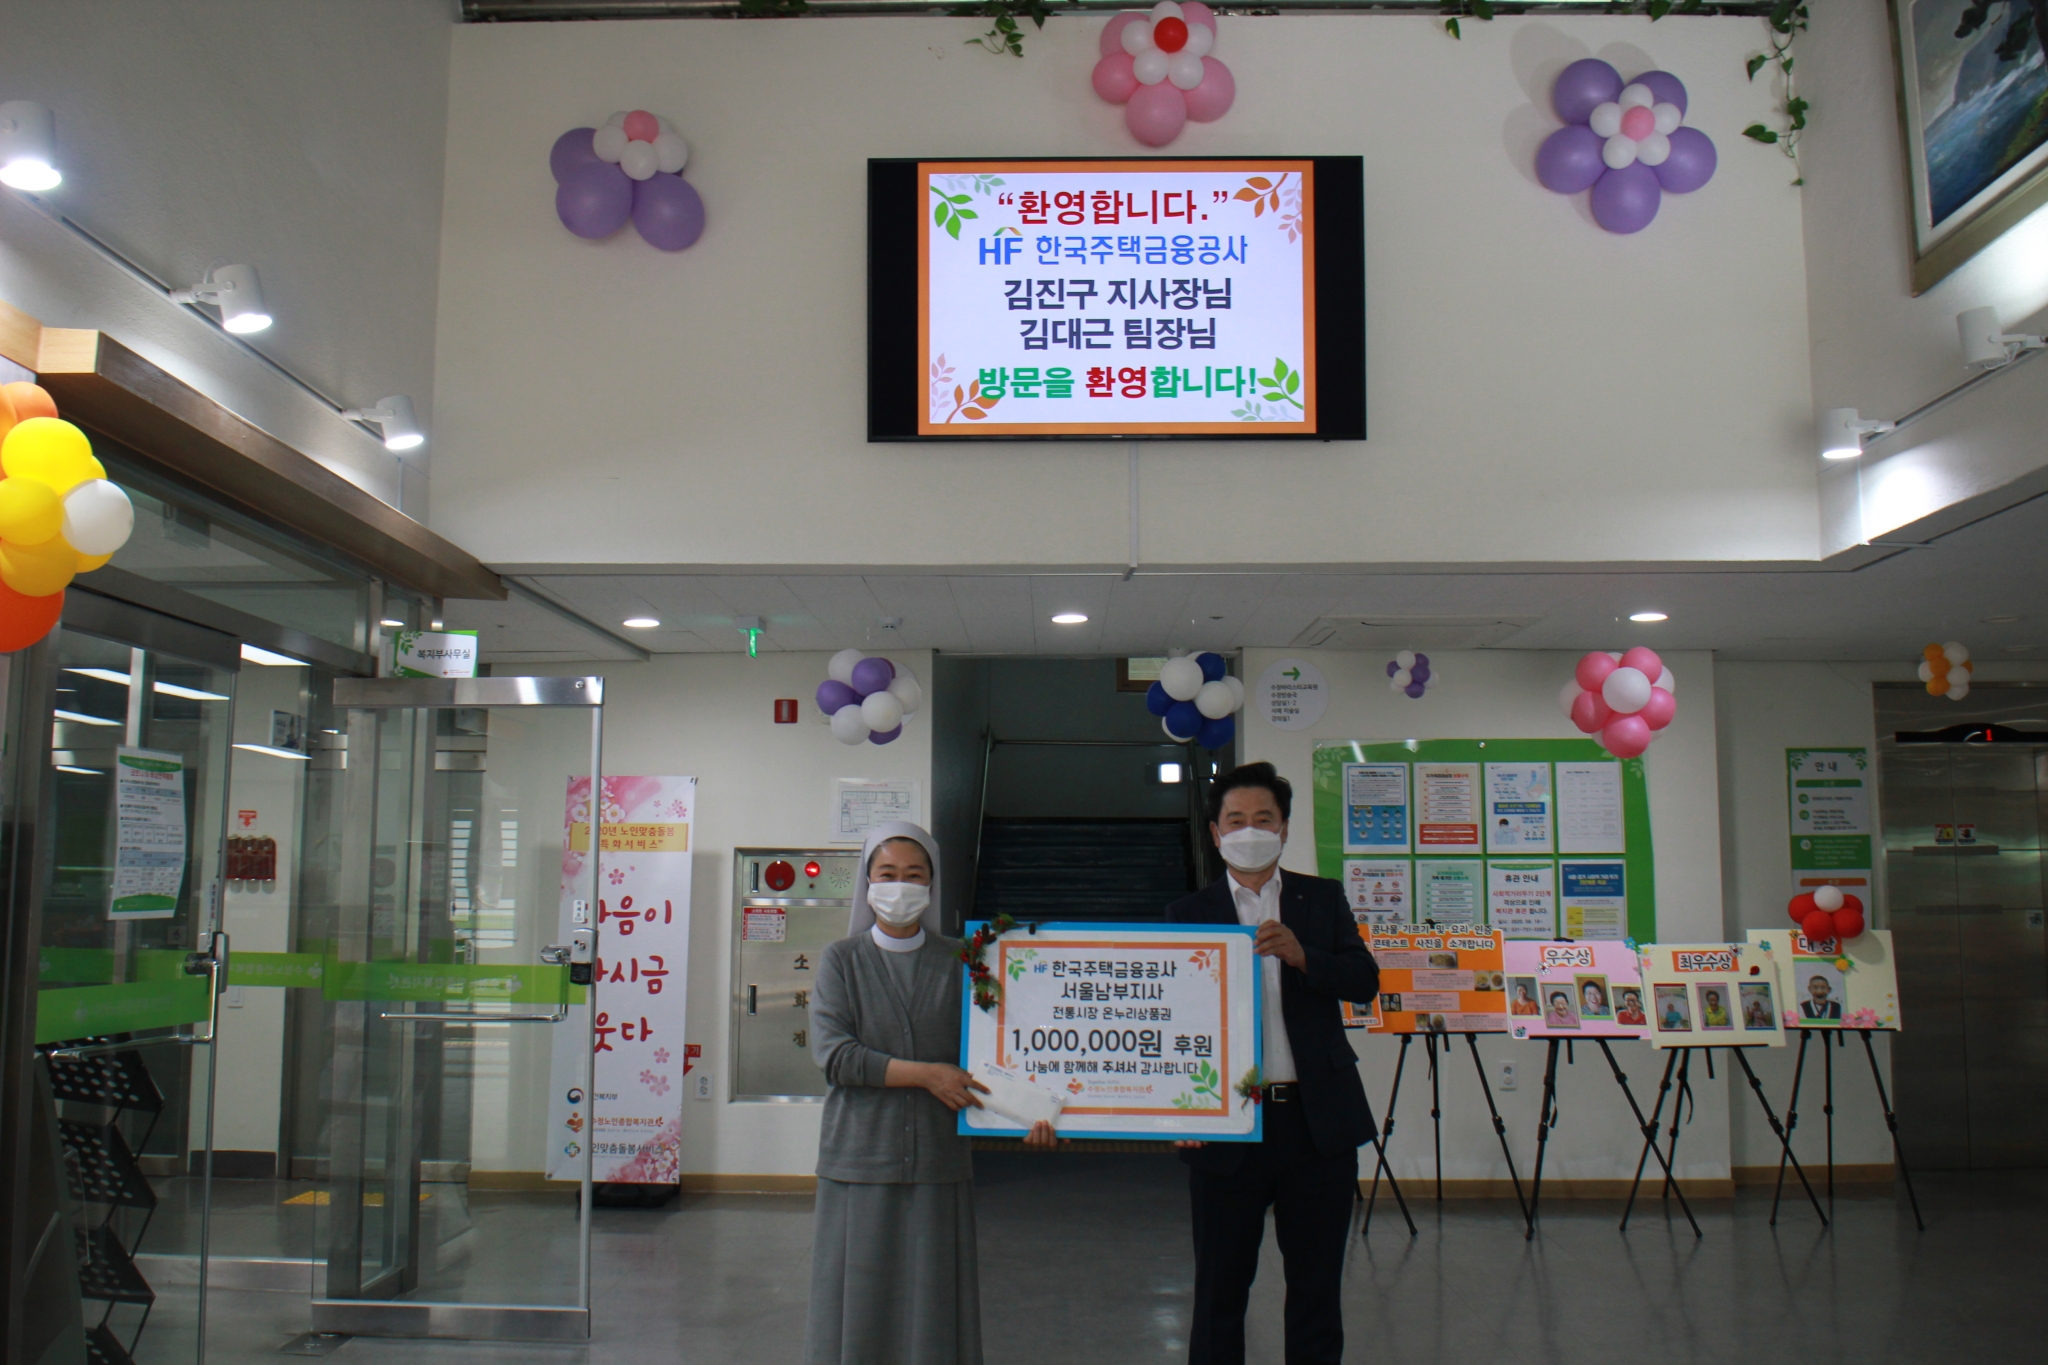 한국주택금융공사 서울남부지사에서 온누리상품권 1,000,000원을 후원해주셨습니다.